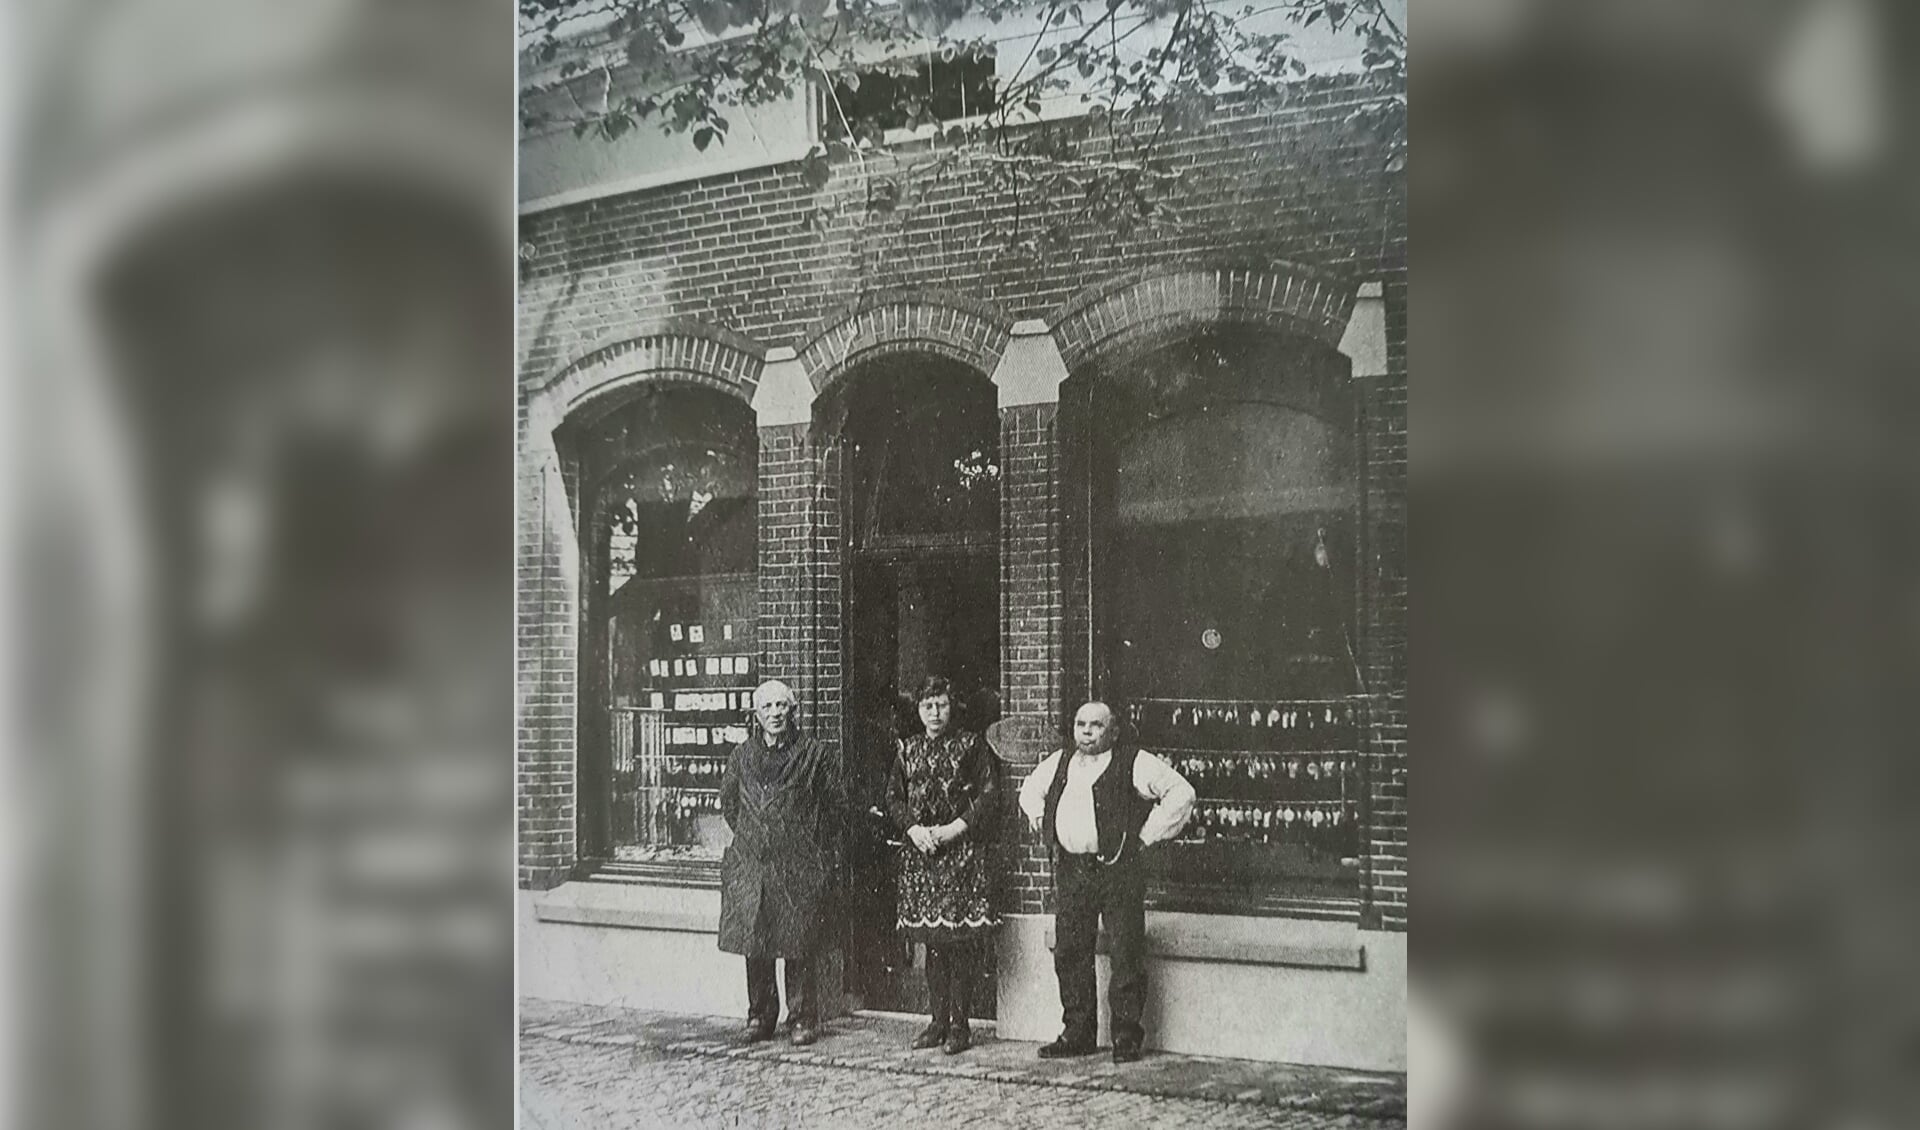 V.l.n.r. Jan Winters, Riekske Wissink en Hent Wissink voor de winkel (opticien en juweliers) aan de Spalstraat. Archief Willy Hermans